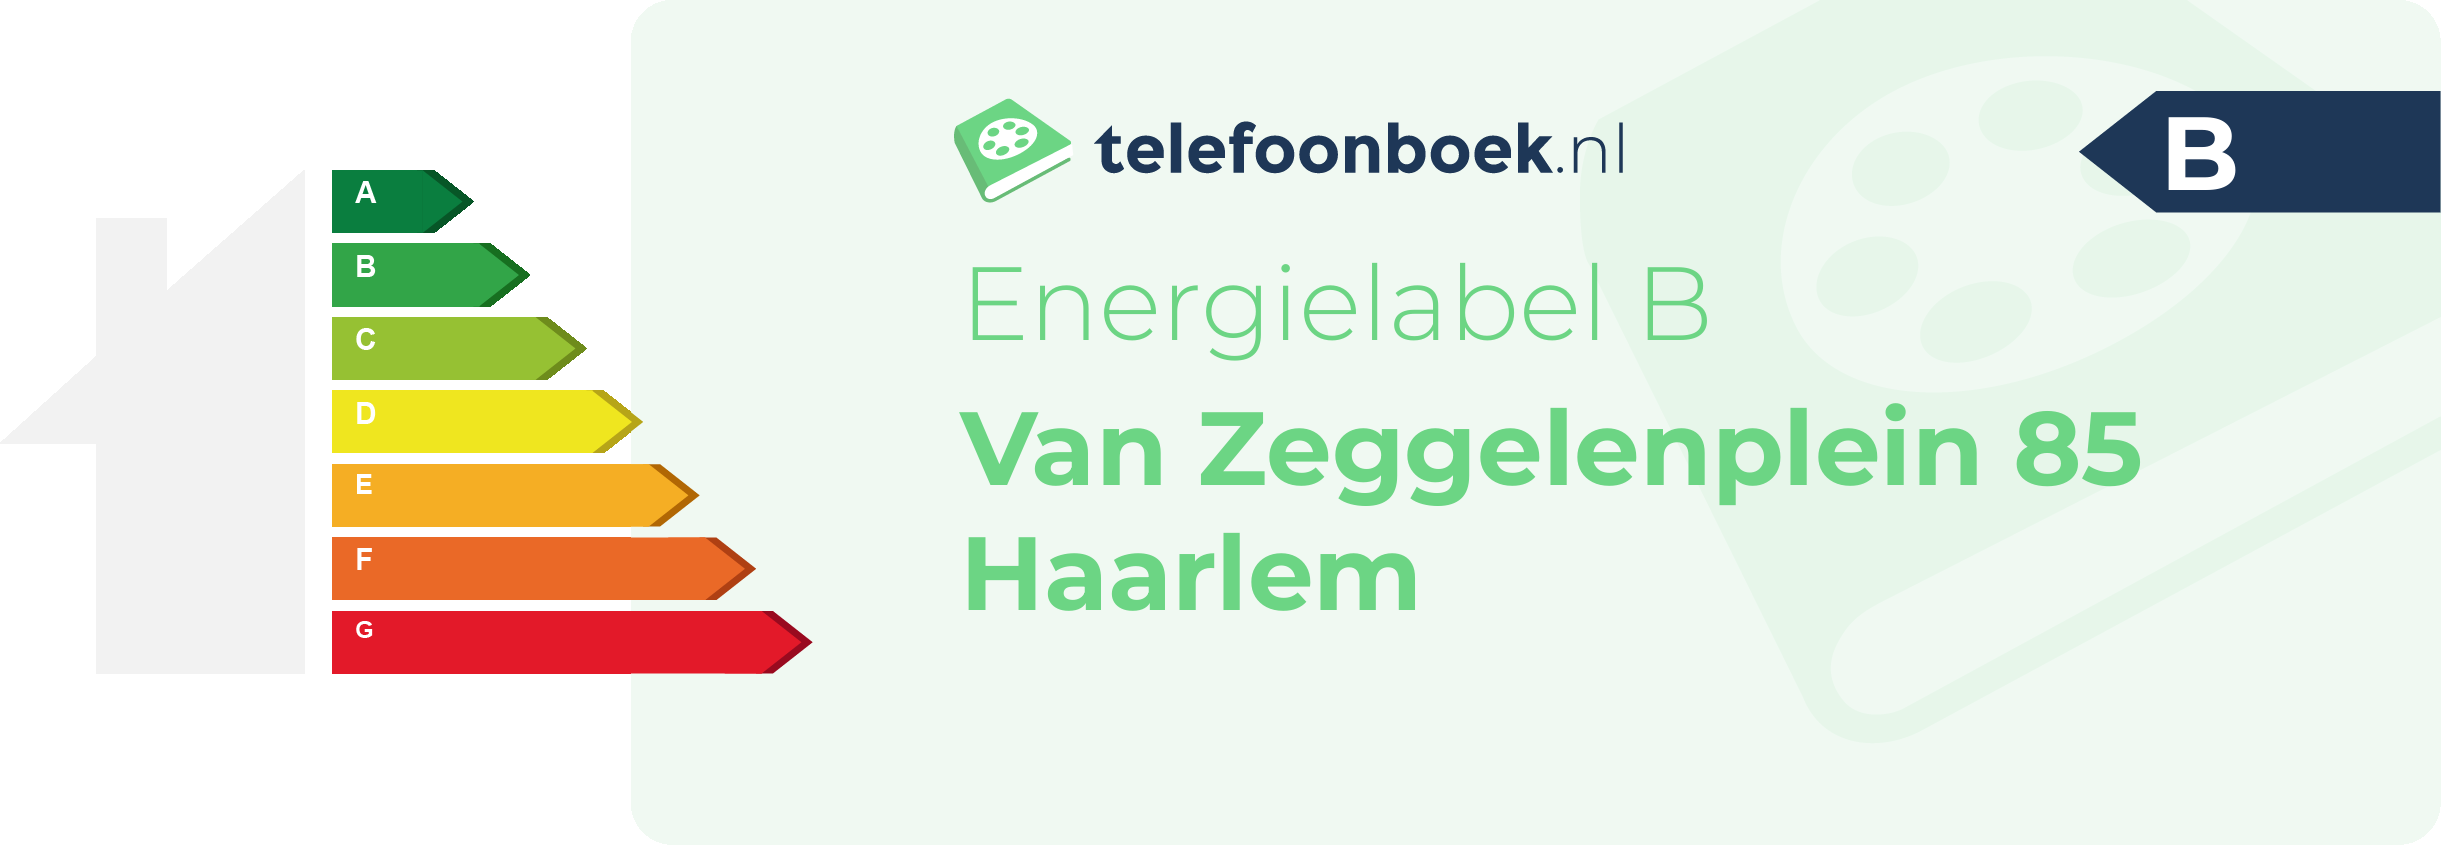 Energielabel Van Zeggelenplein 85 Haarlem